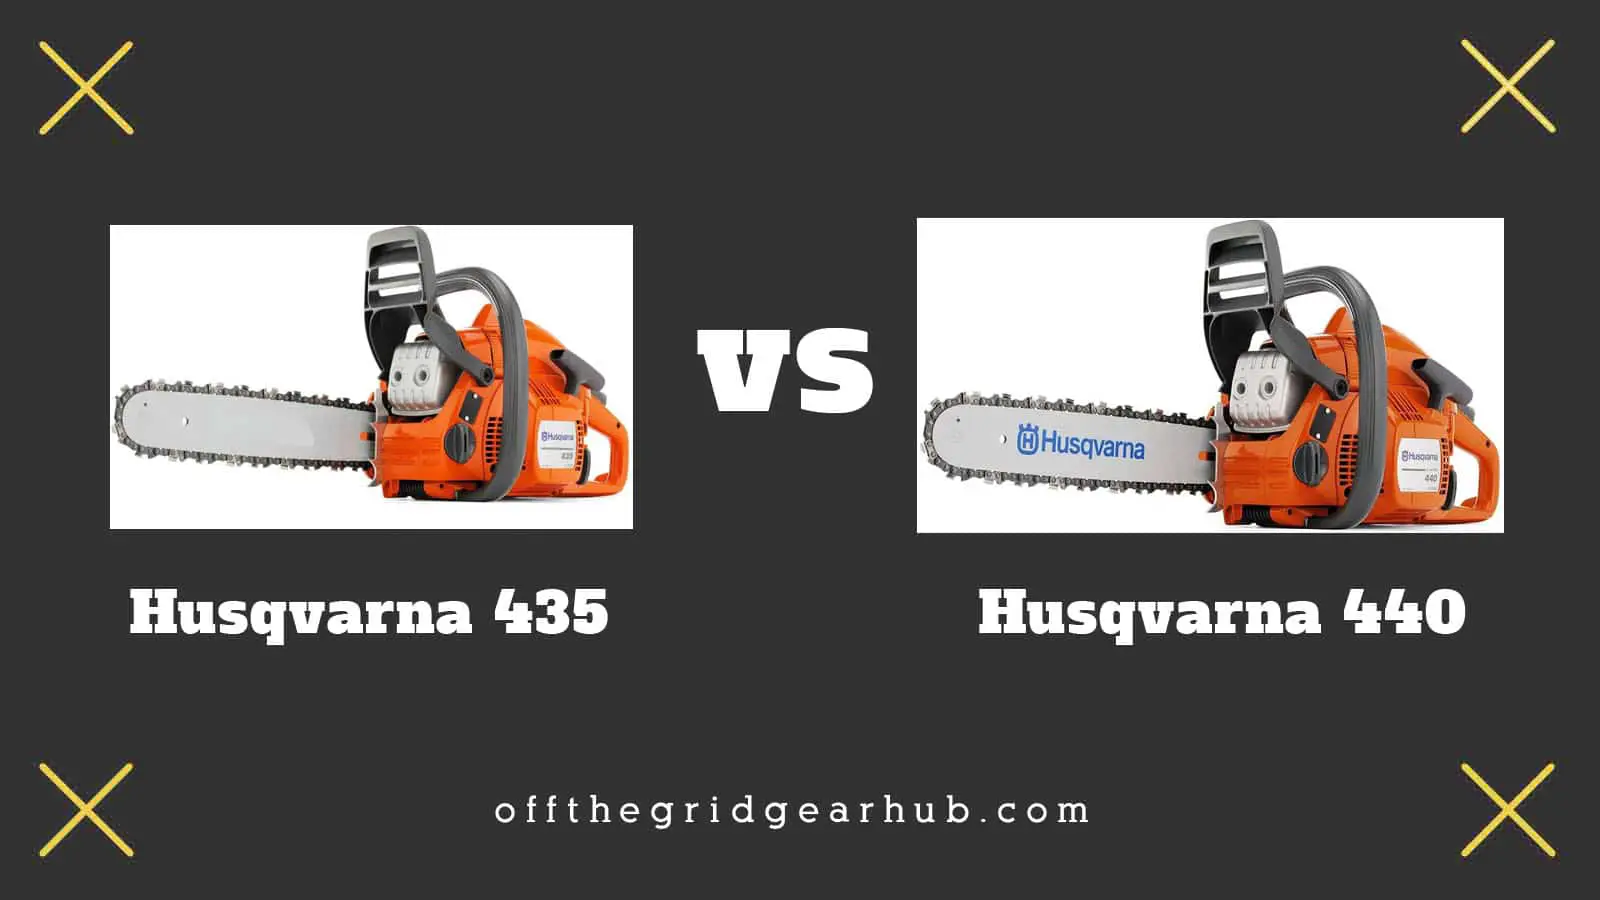 Husqvarna 435 vs 440 There Is A Clear Winner